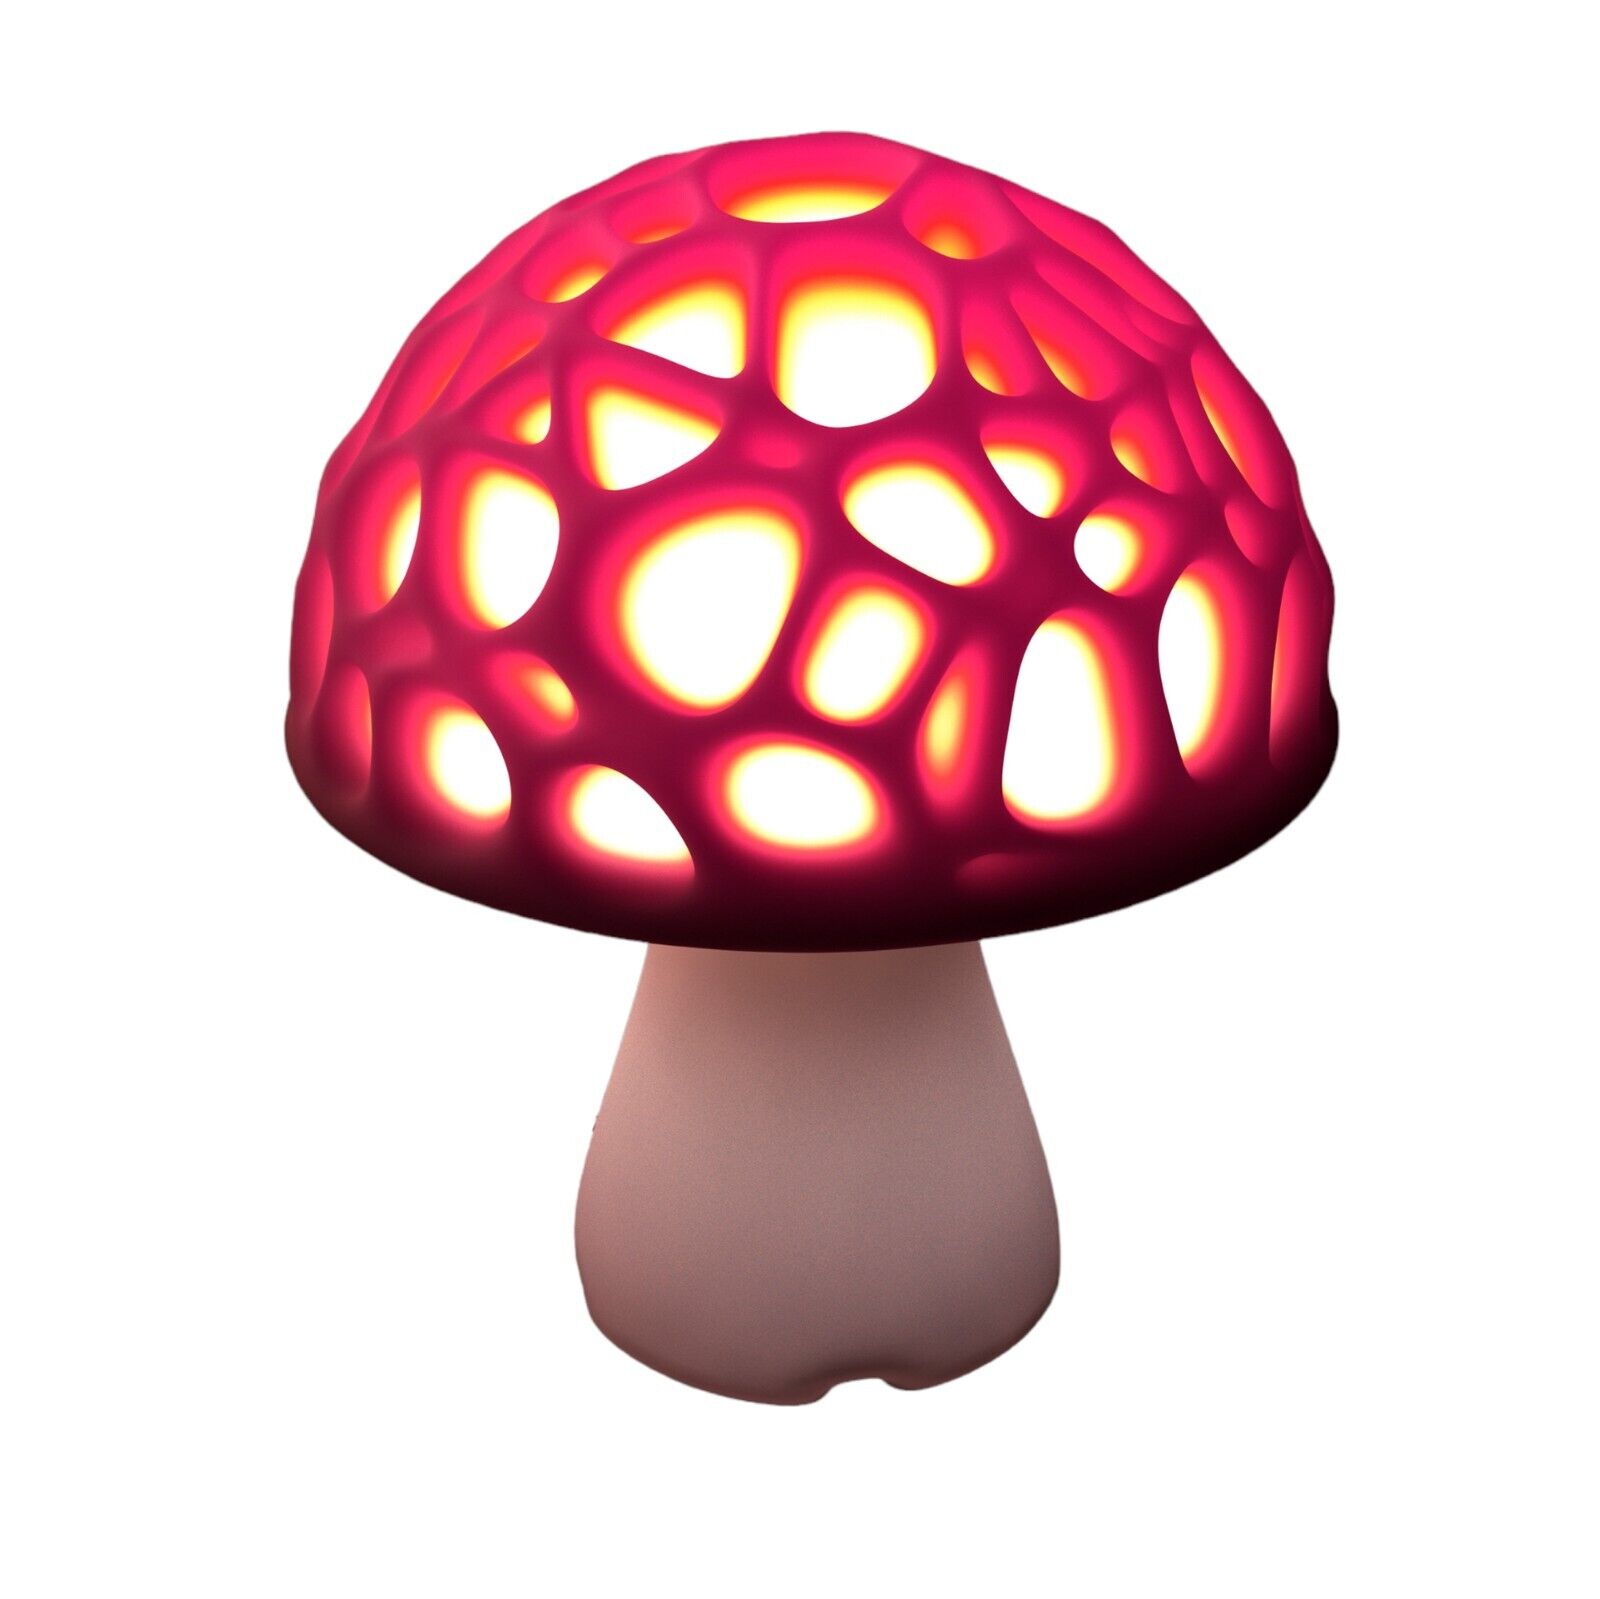 Fun Magic Mushroom Desk/Table Lamp